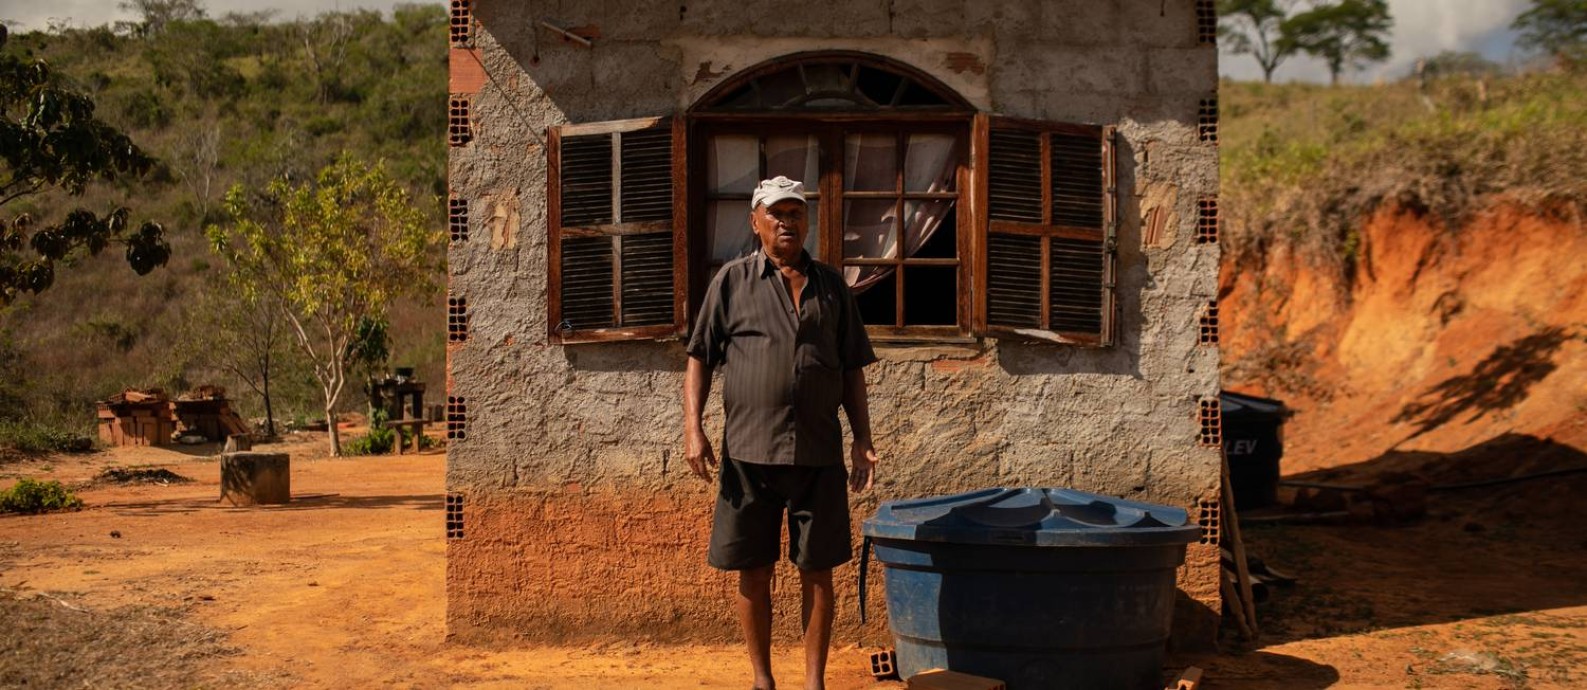 O agricultor César Augusto Passos da Silva em frente a sua casa: nem sempre a caixa d'água está cheia Foto: Brenno Carvalho / Agência O Globo